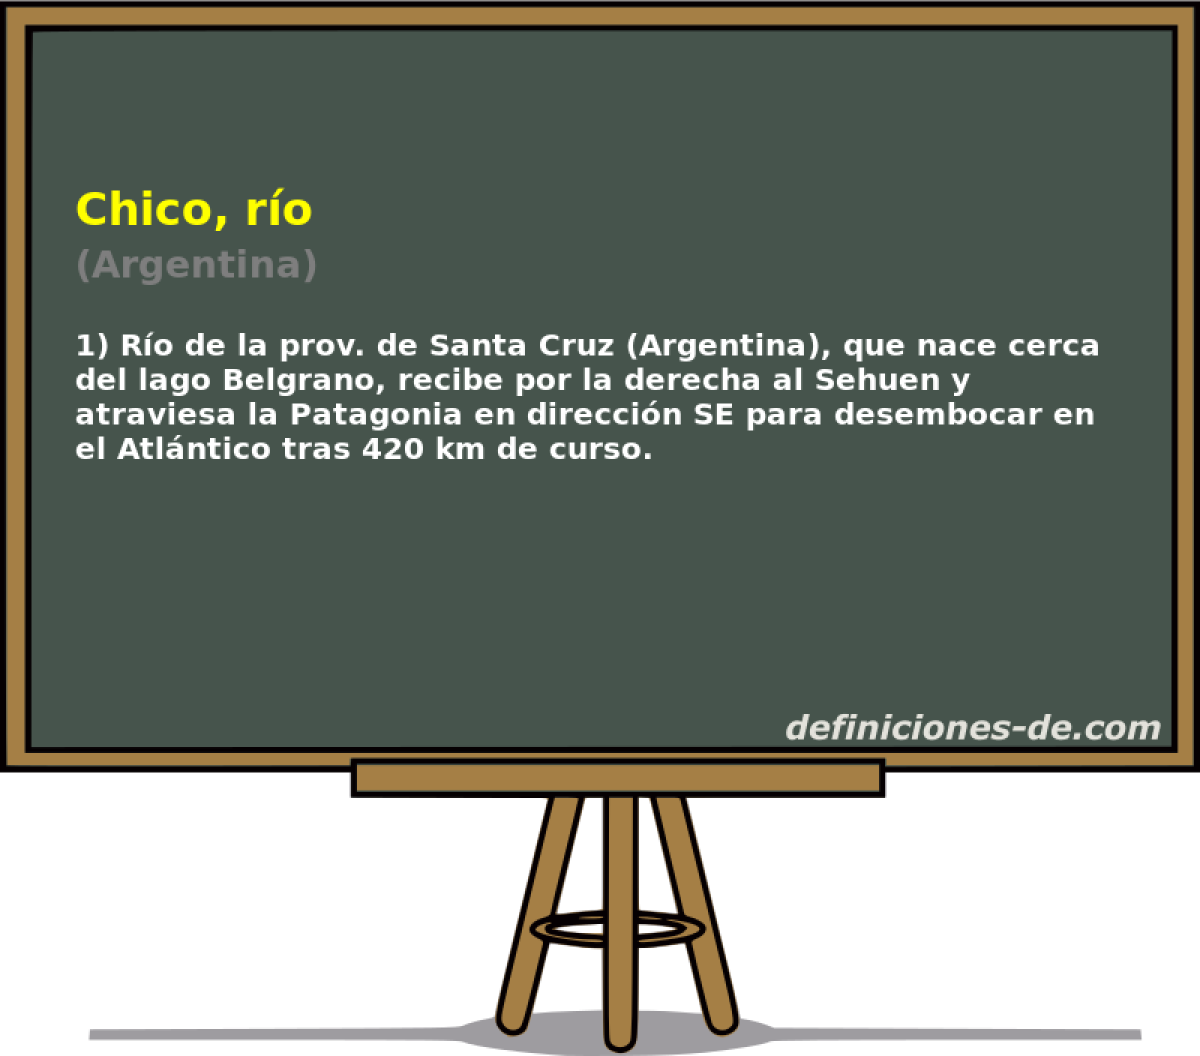 Chico, ro (Argentina)